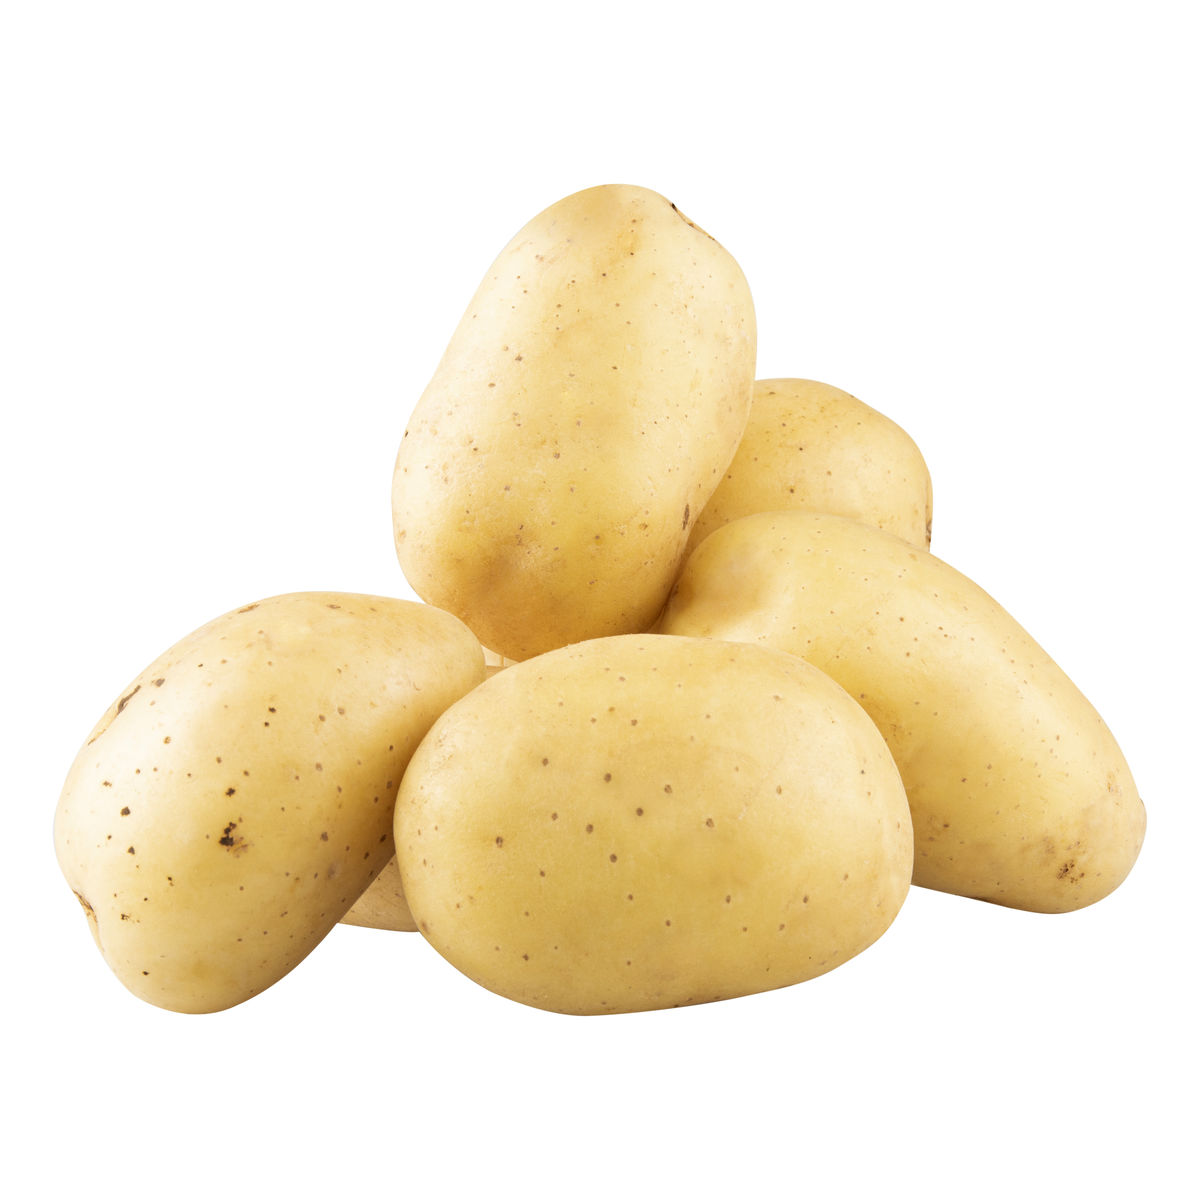 Aardappelen - 3 stuks